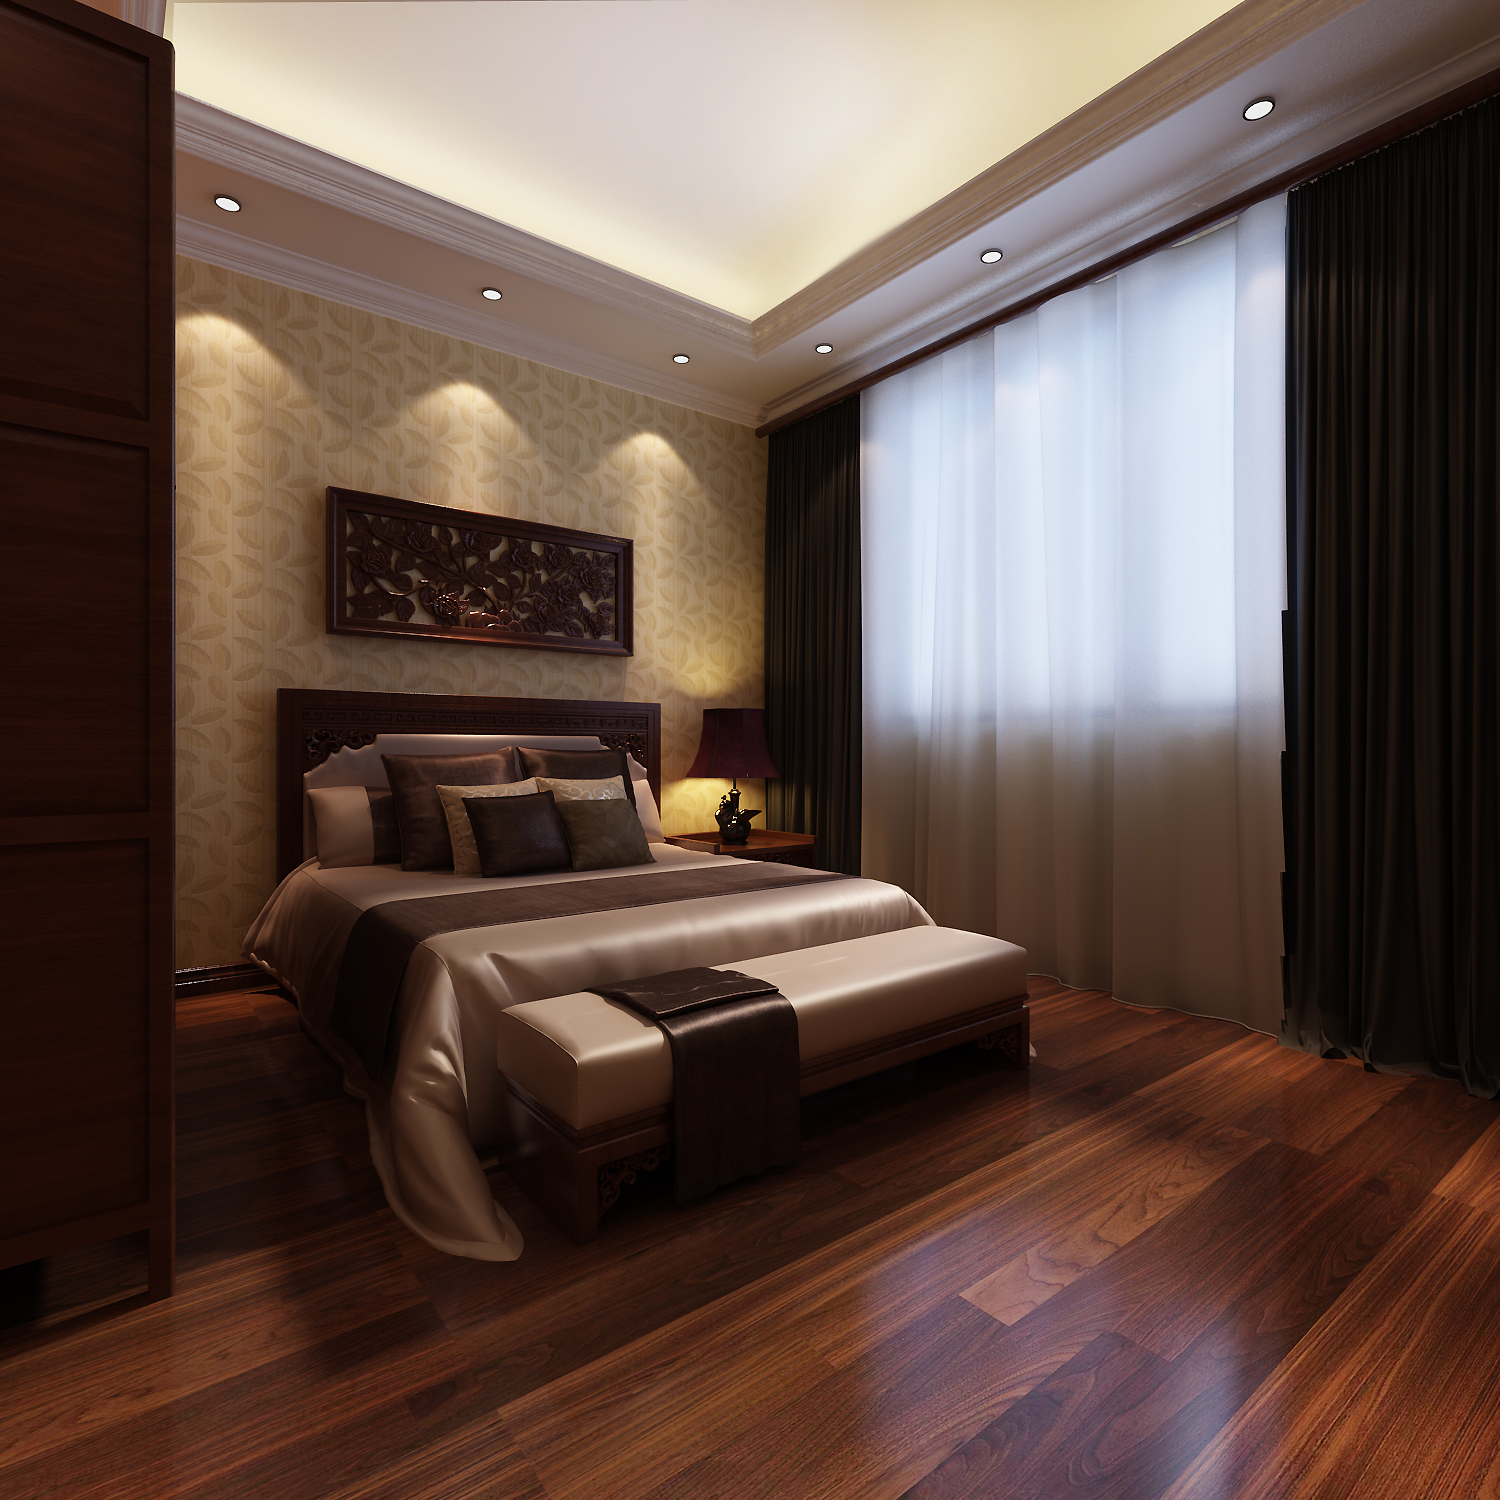 别墅 中式 卧室图片来自石俊全在中式--给人庄重与优雅的双重感受的分享